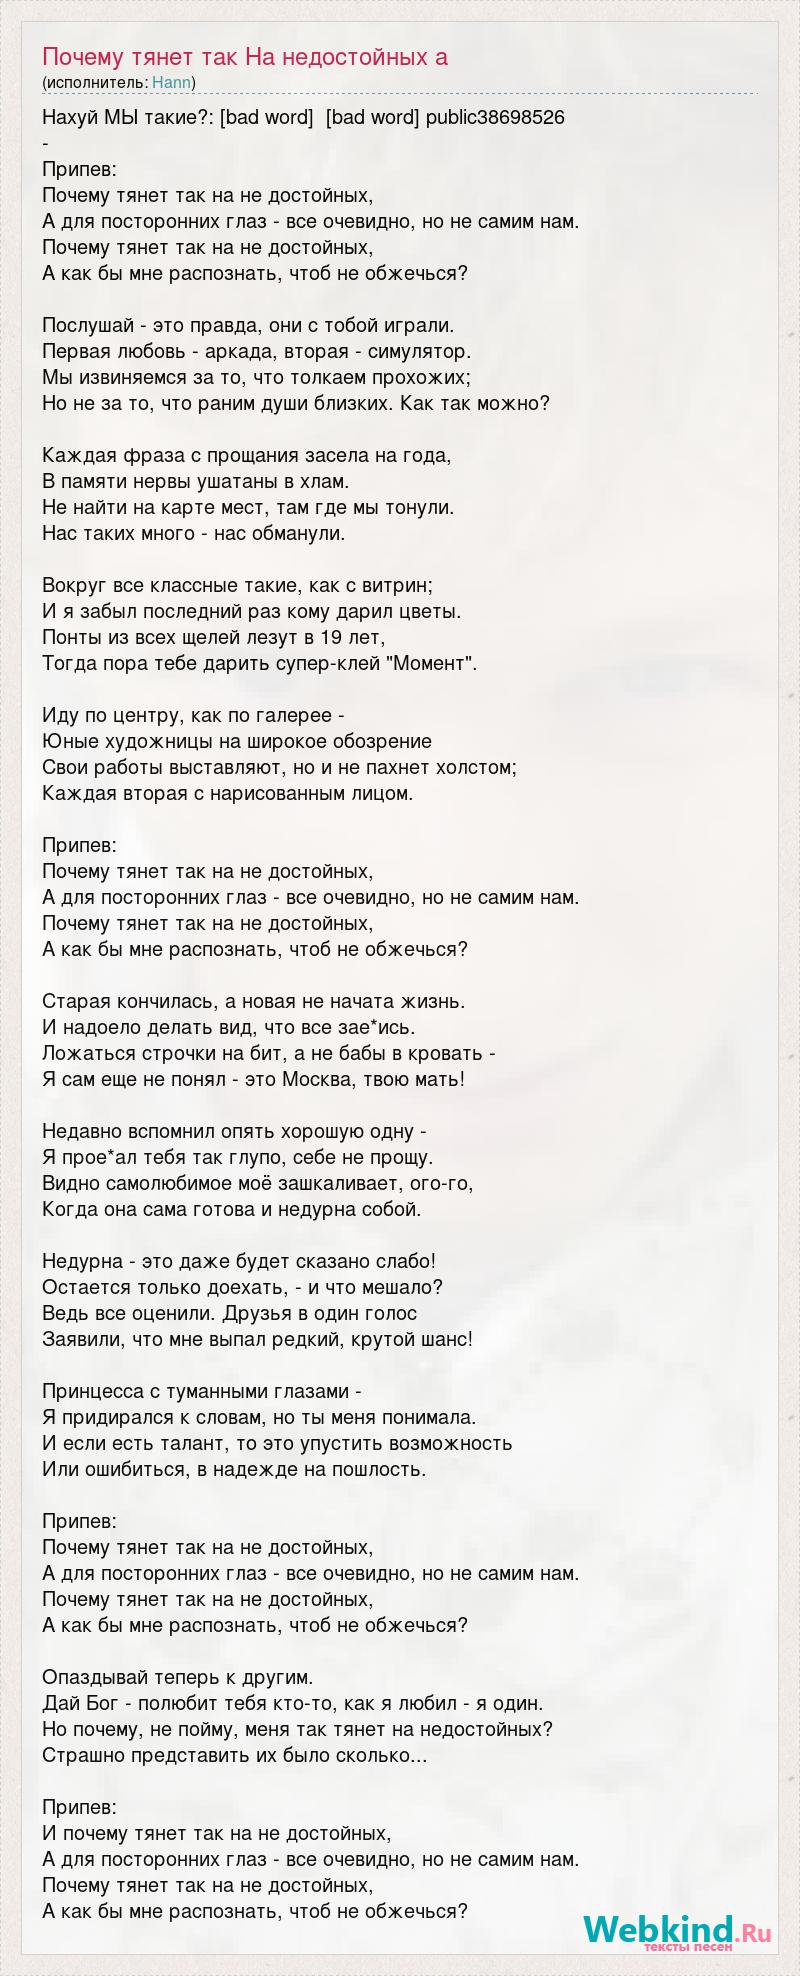 Hann - На недостойных (2015) | Текст песни